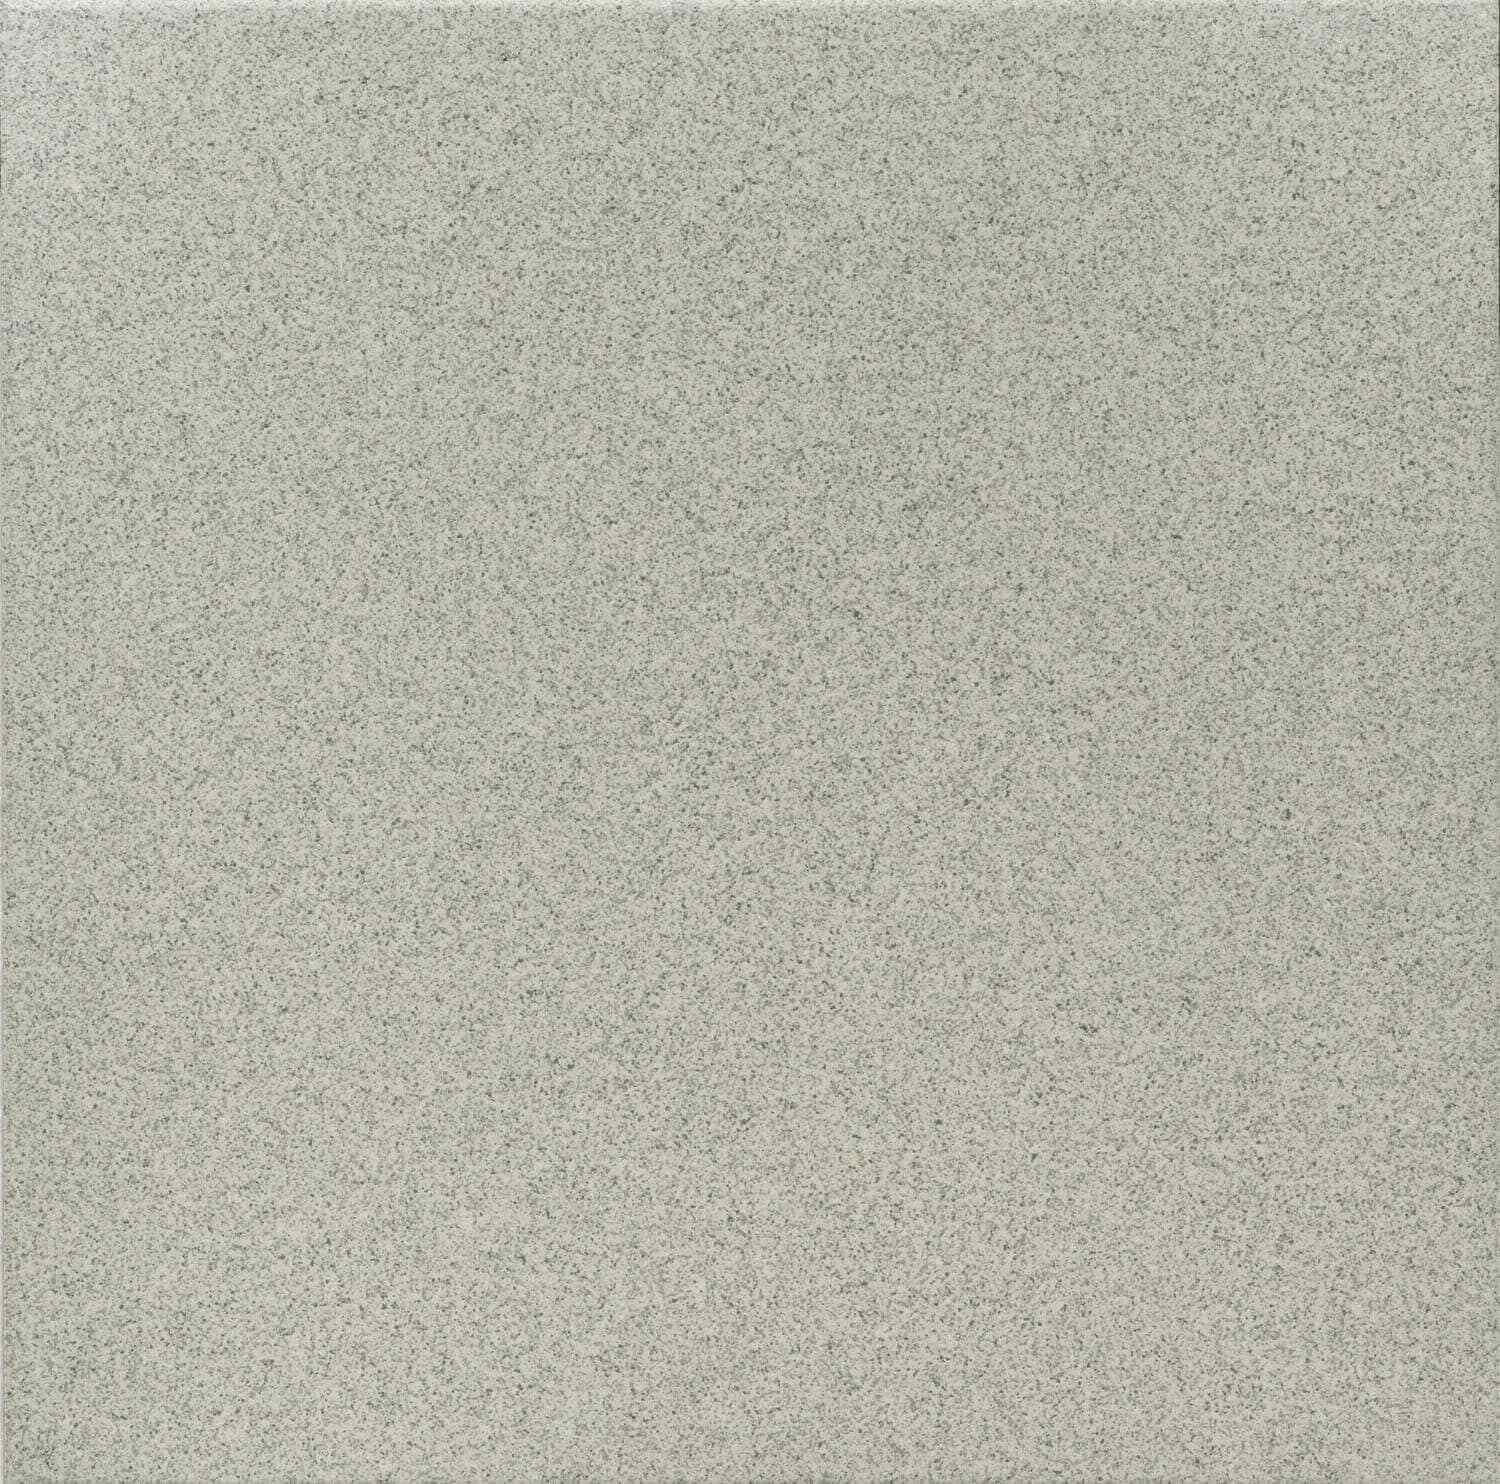 Dorset Woolliscroft Flat Steel Grey Slip Resistant Quarry Tile 148x148mm